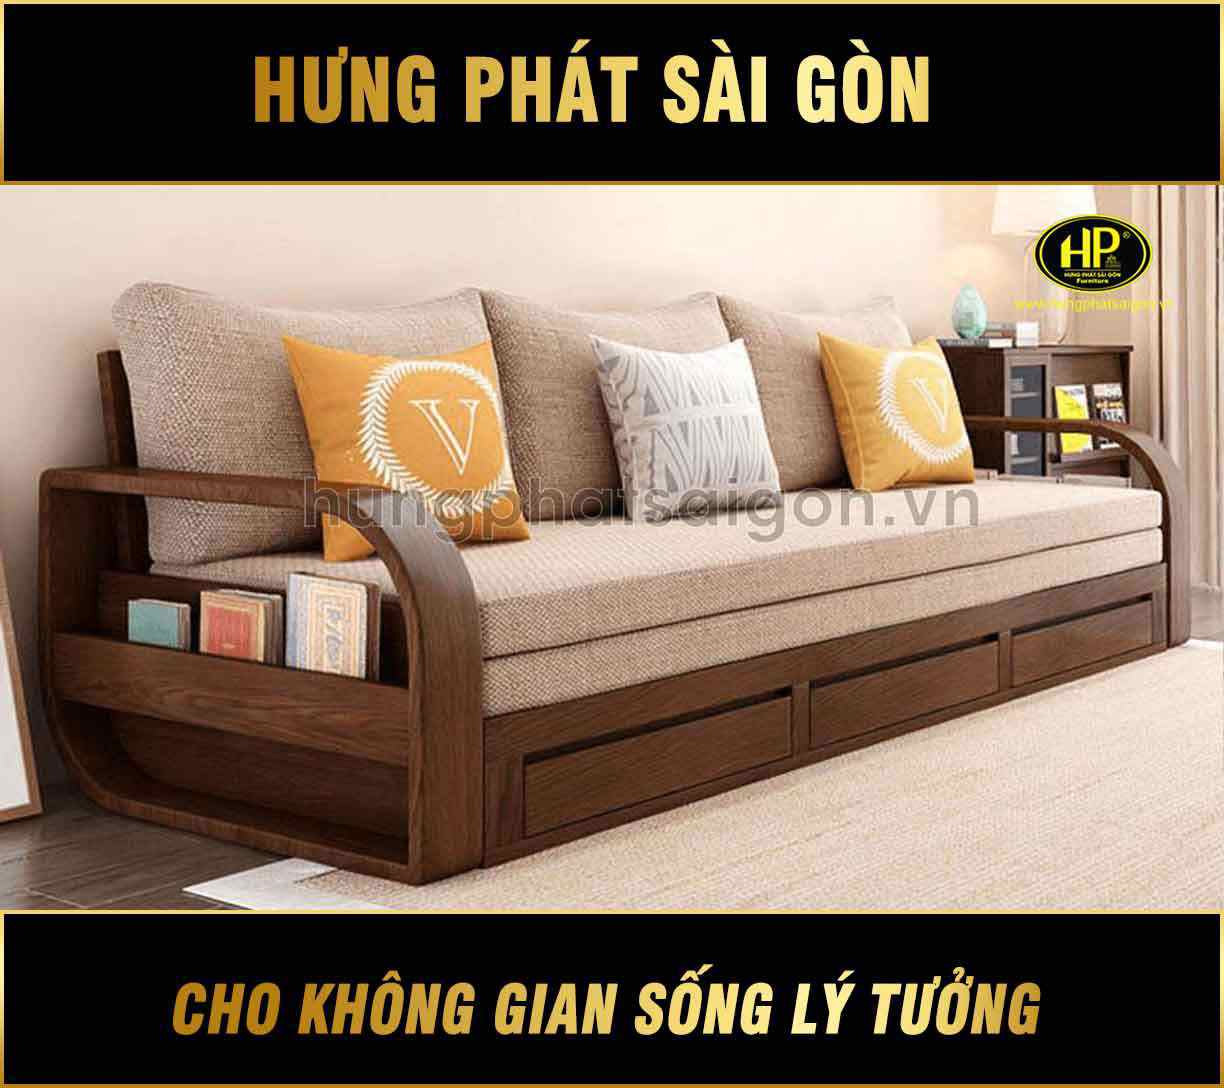 Sofa giường gỗ mới nhất G-08 - Hưng Phát Sài Gòn